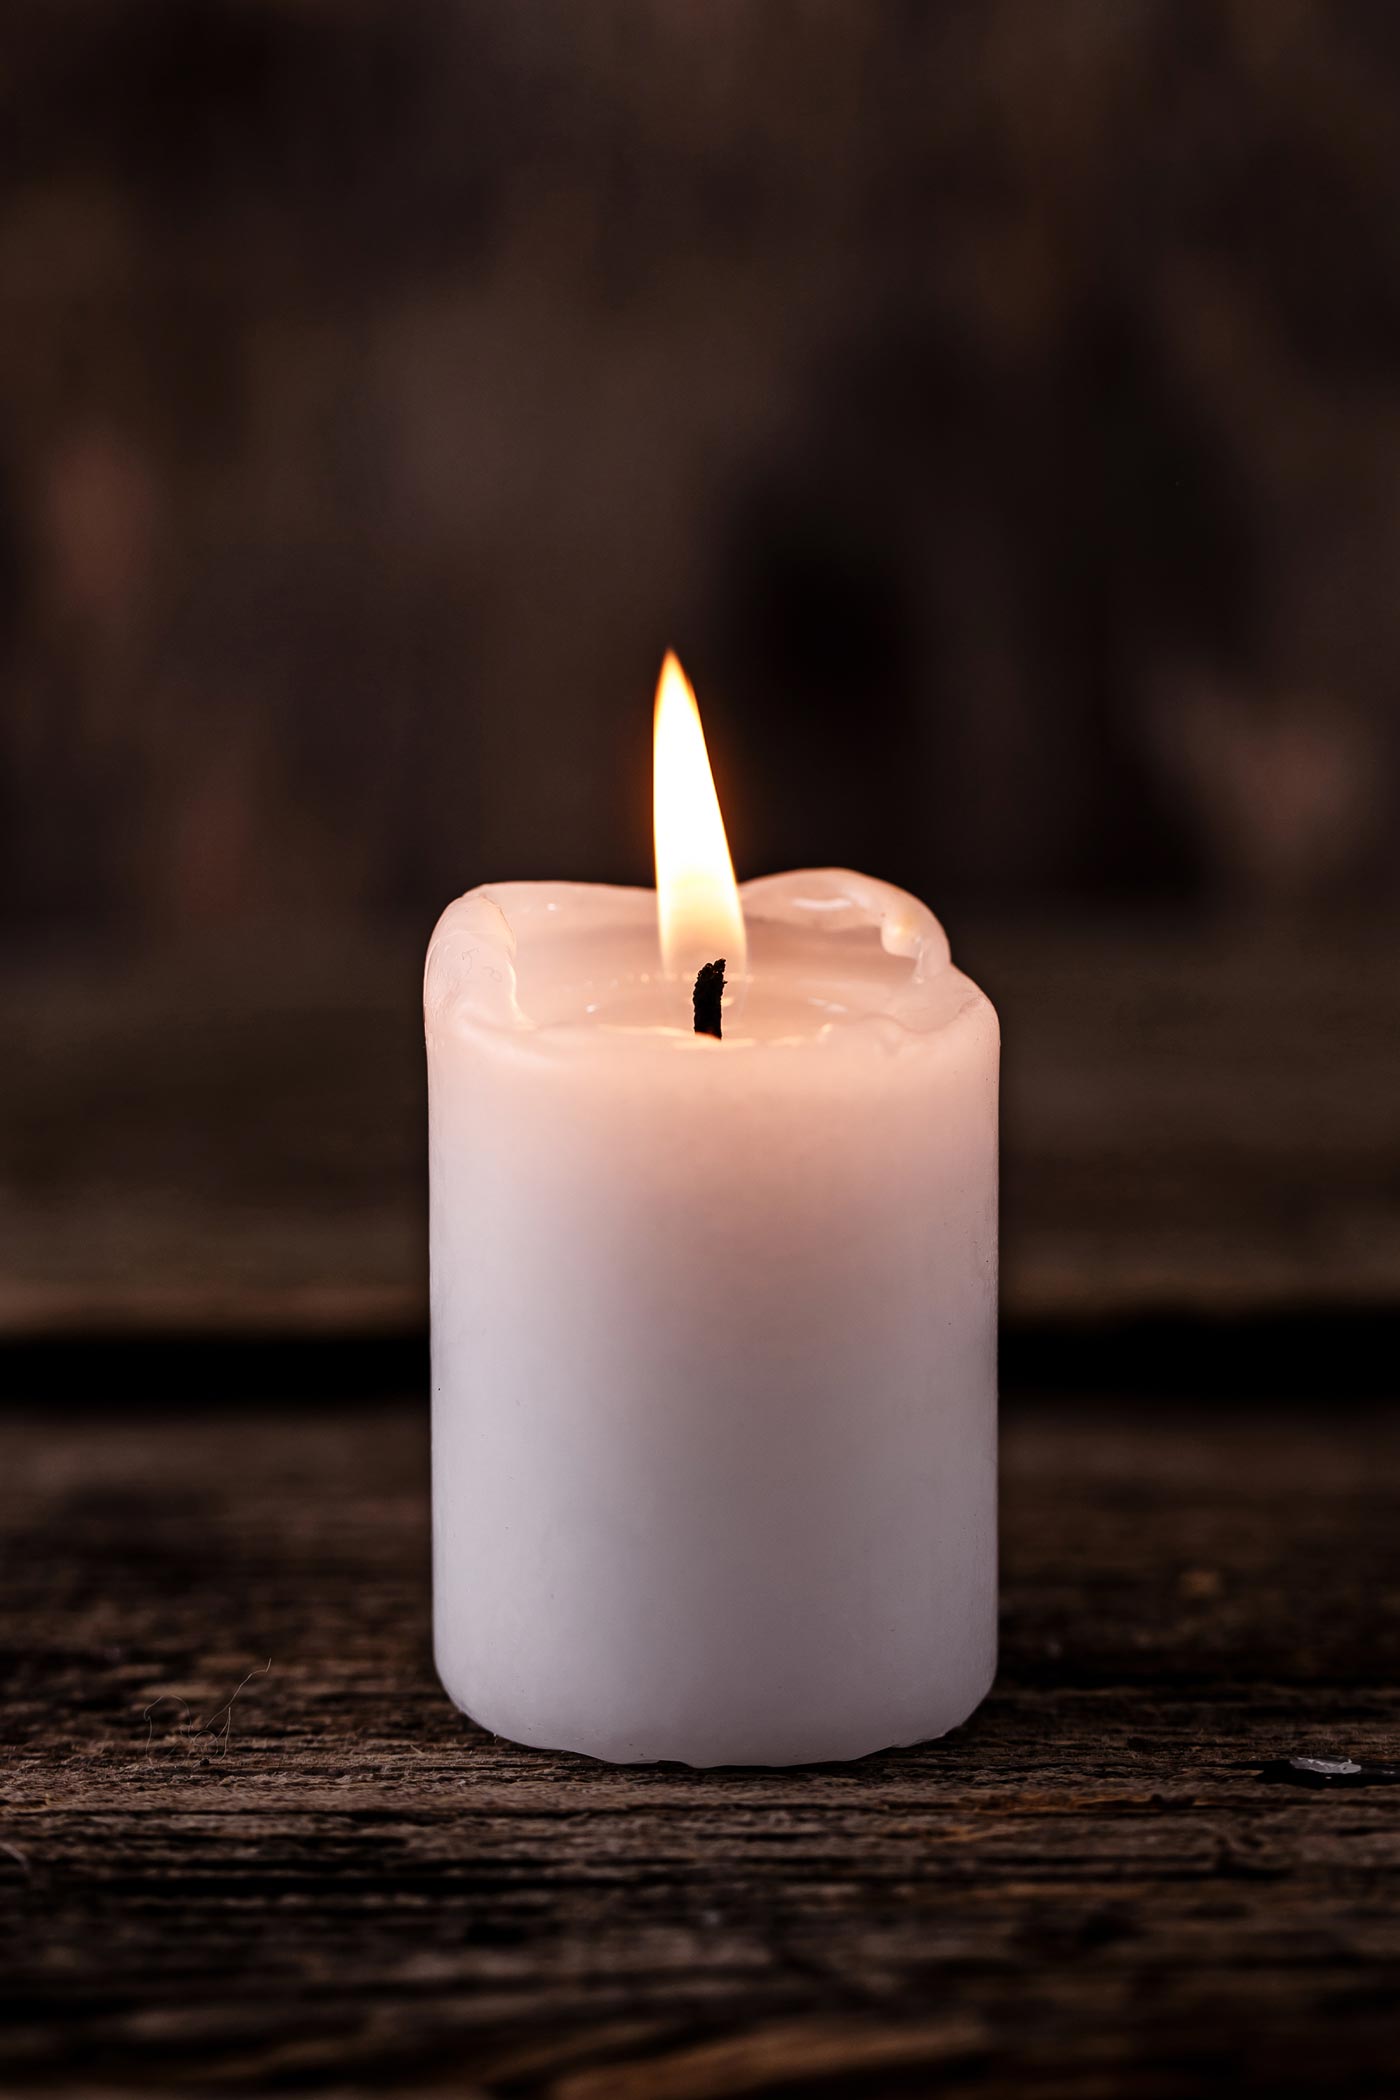 virtual-vet-memorial-candle